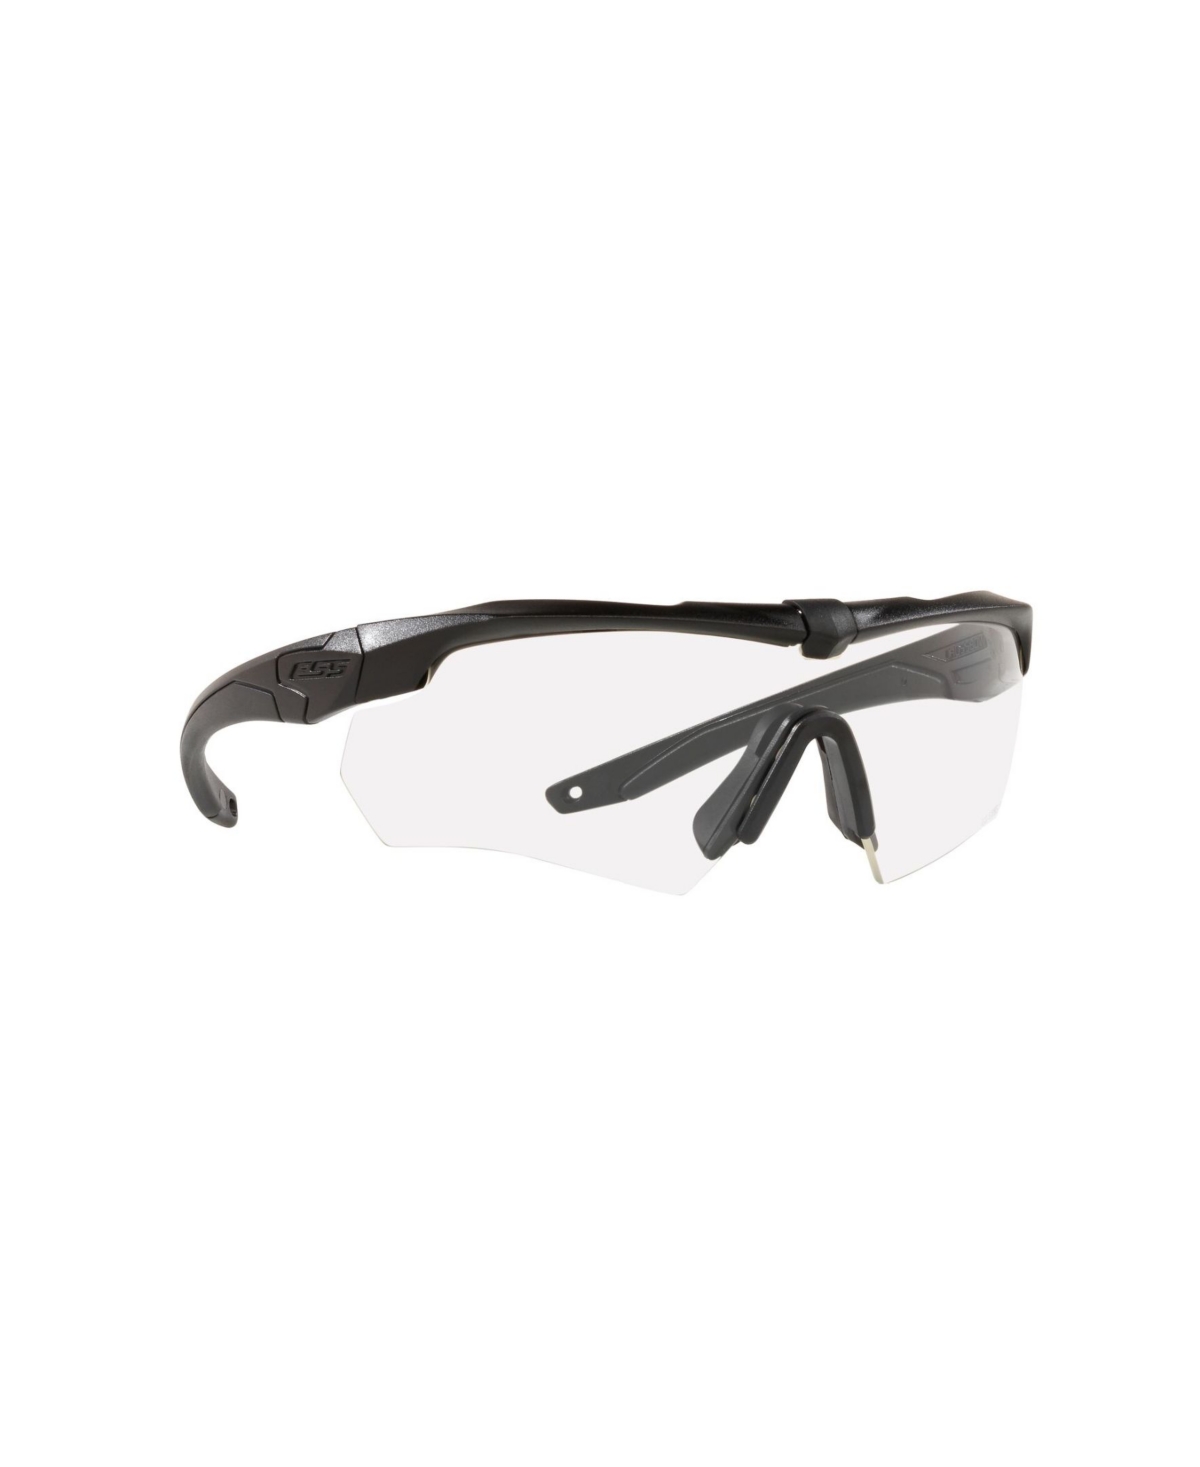 Ppe Safety Glasses, EE9007-15 - Black